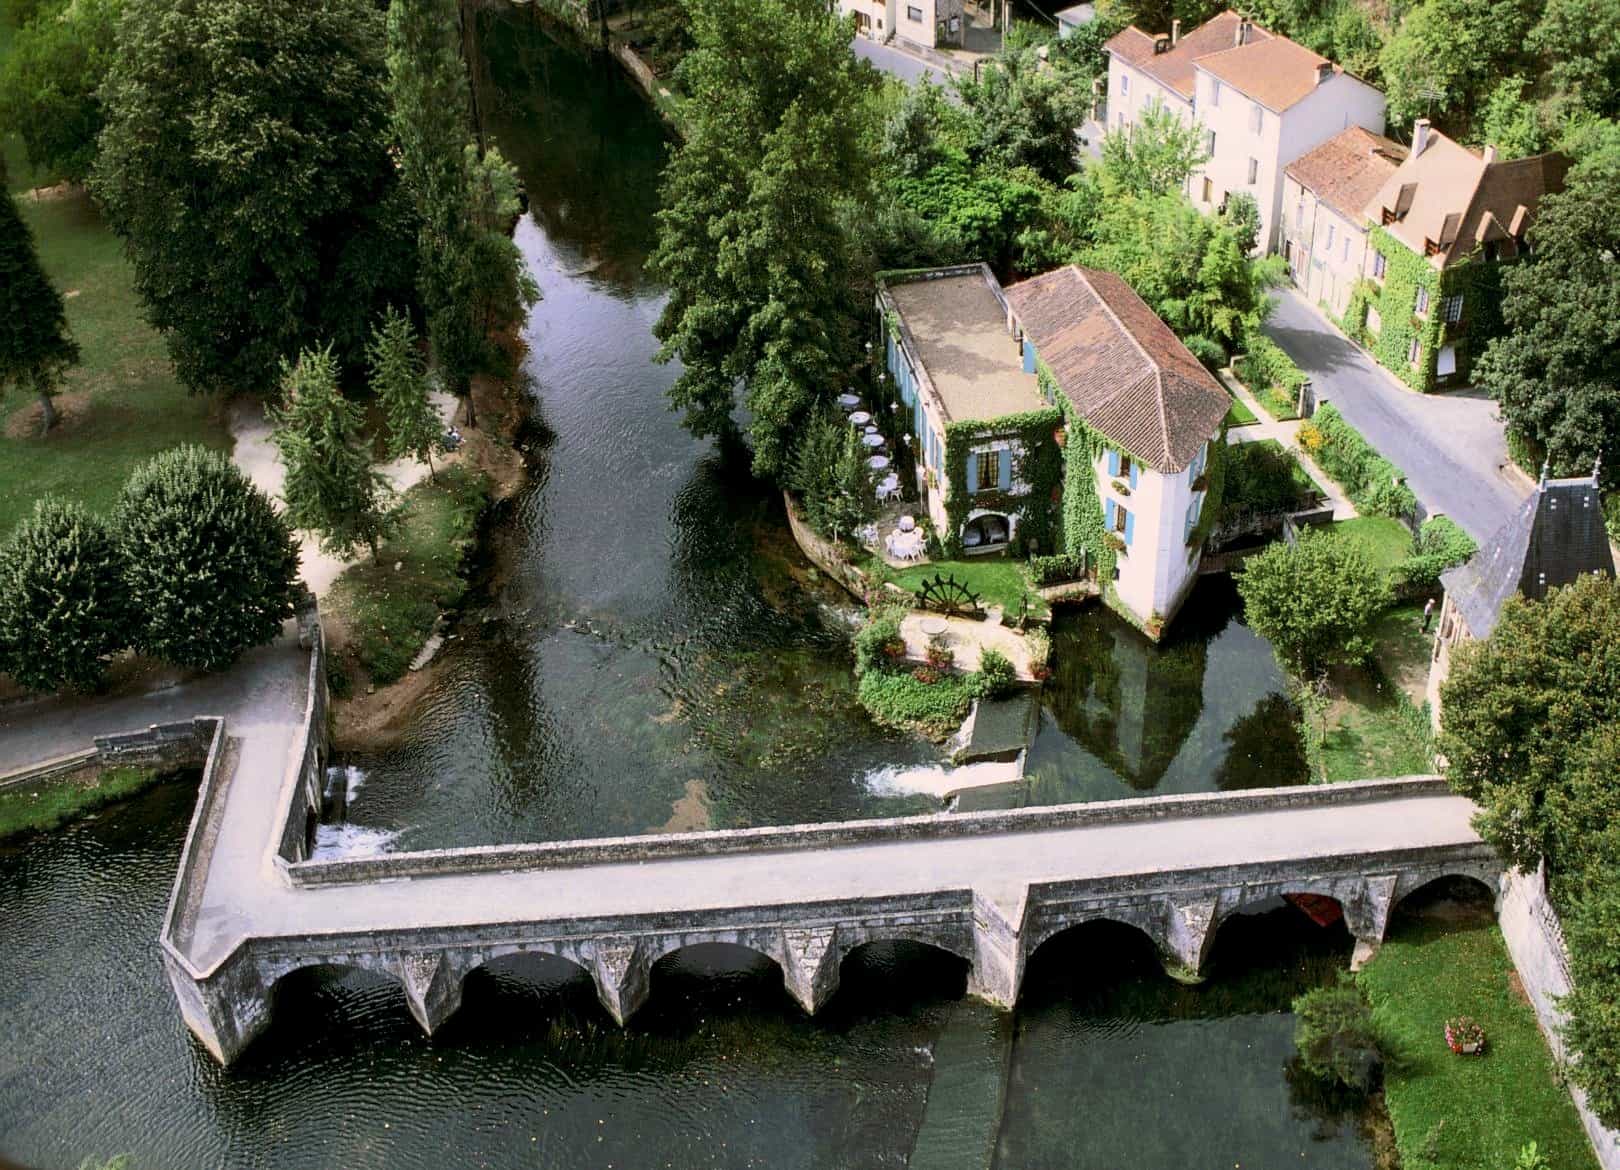 Moulin de l’Abbaye Hotel in France 2